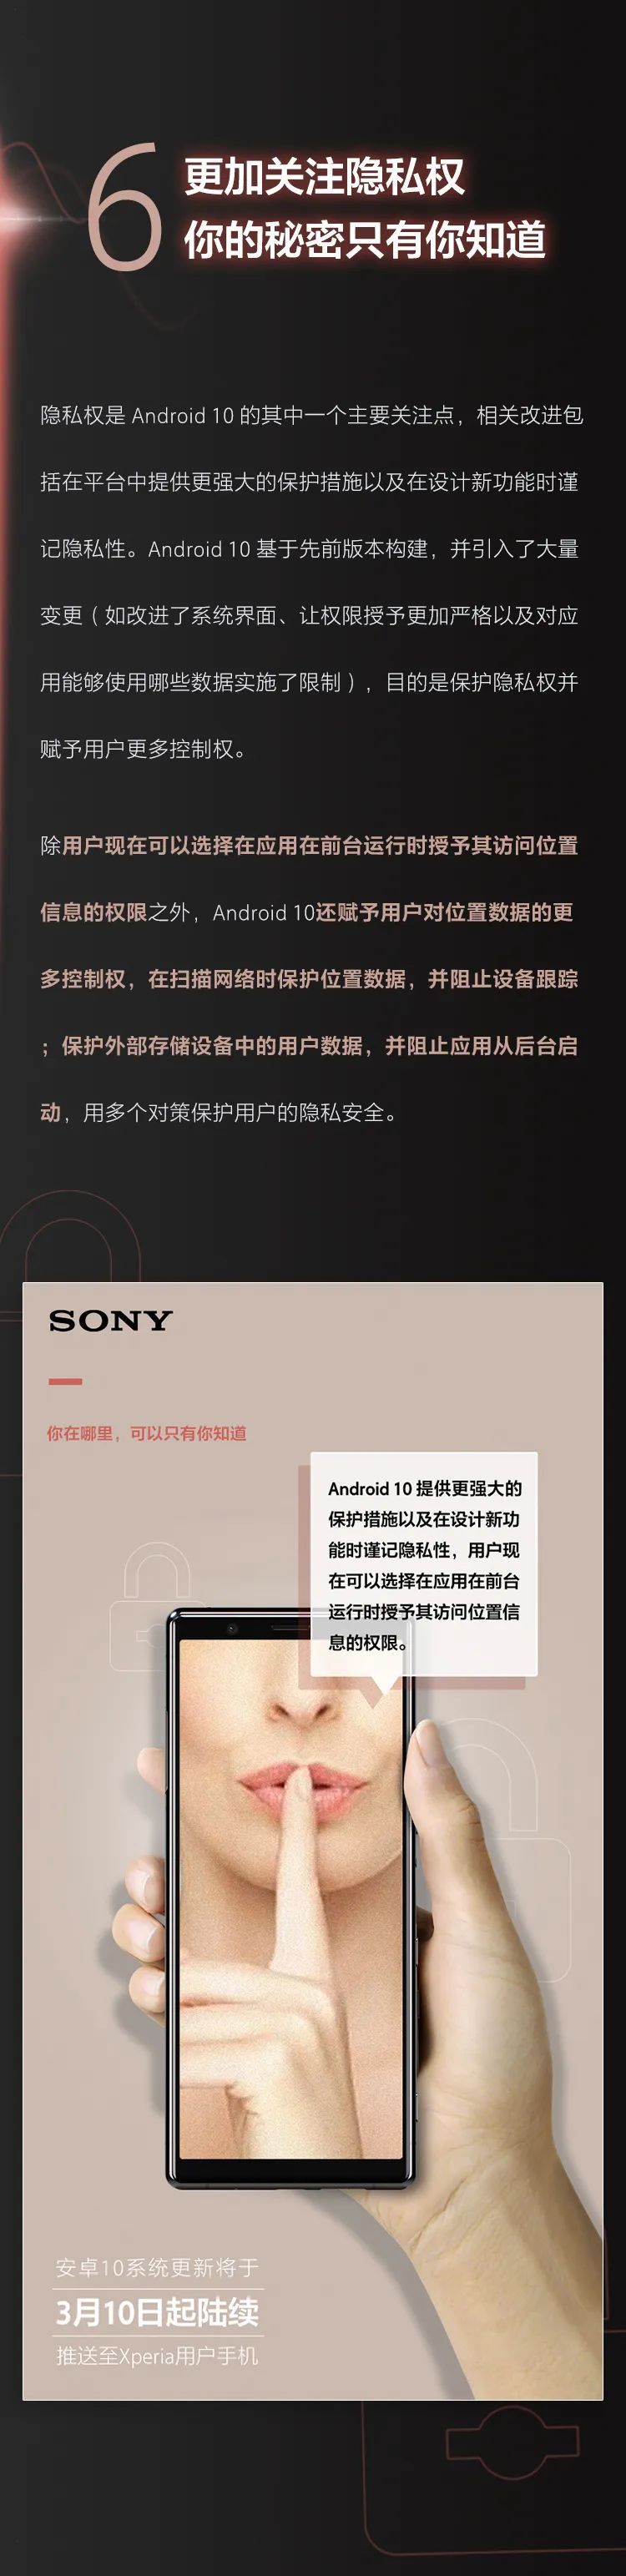 sony索尼xperia安卓10系统更新全揭秘